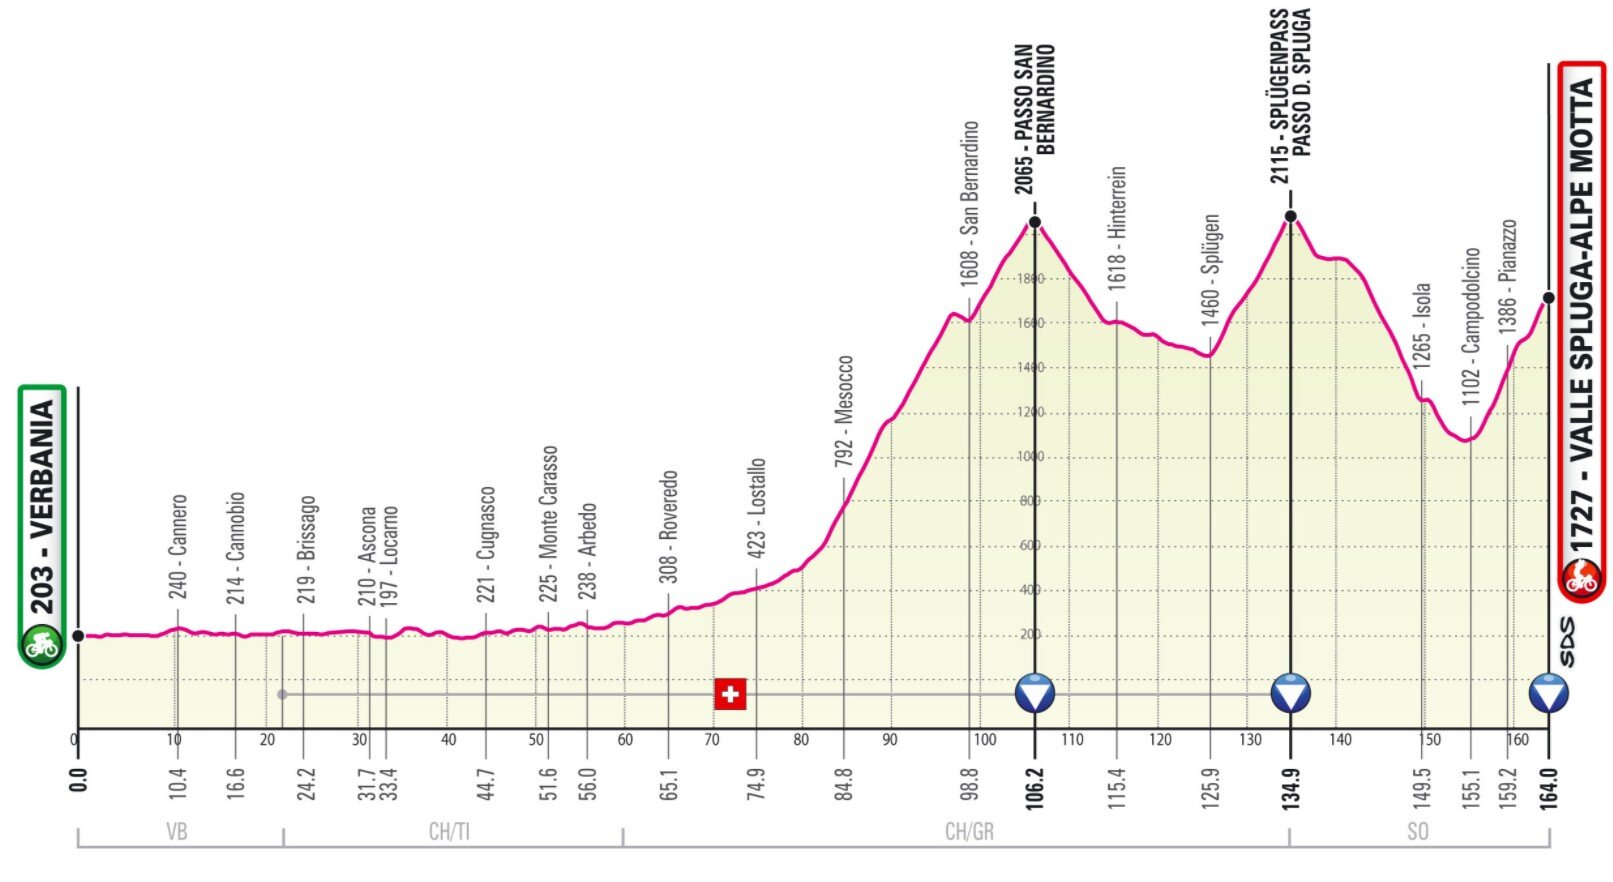 Etapa 20 Giro Italia 2021